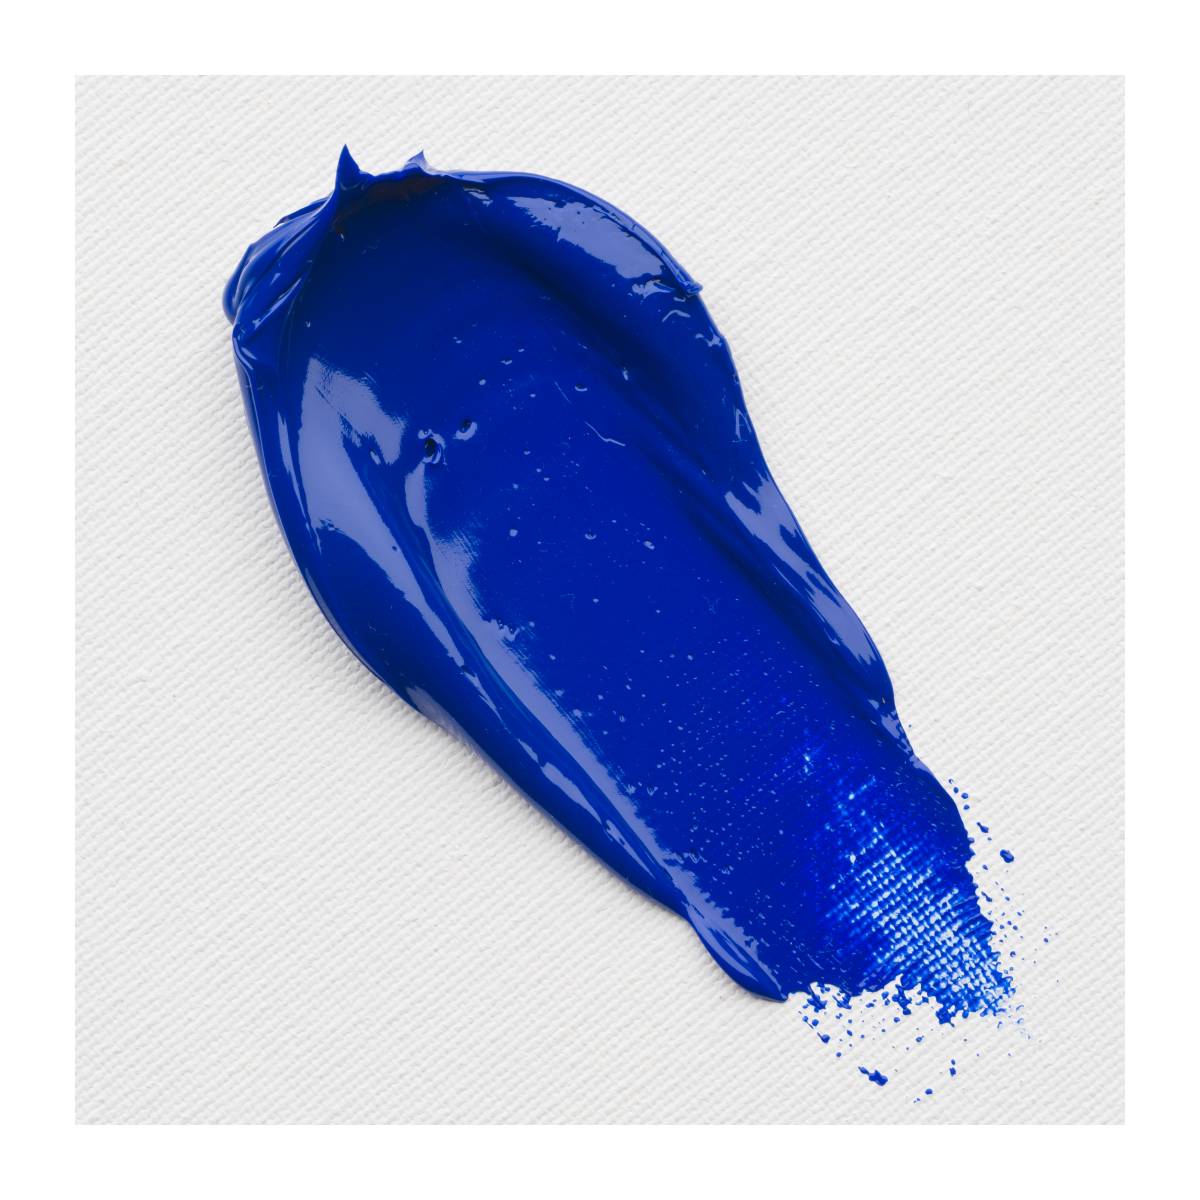 Cobalt Blue Ultramarine